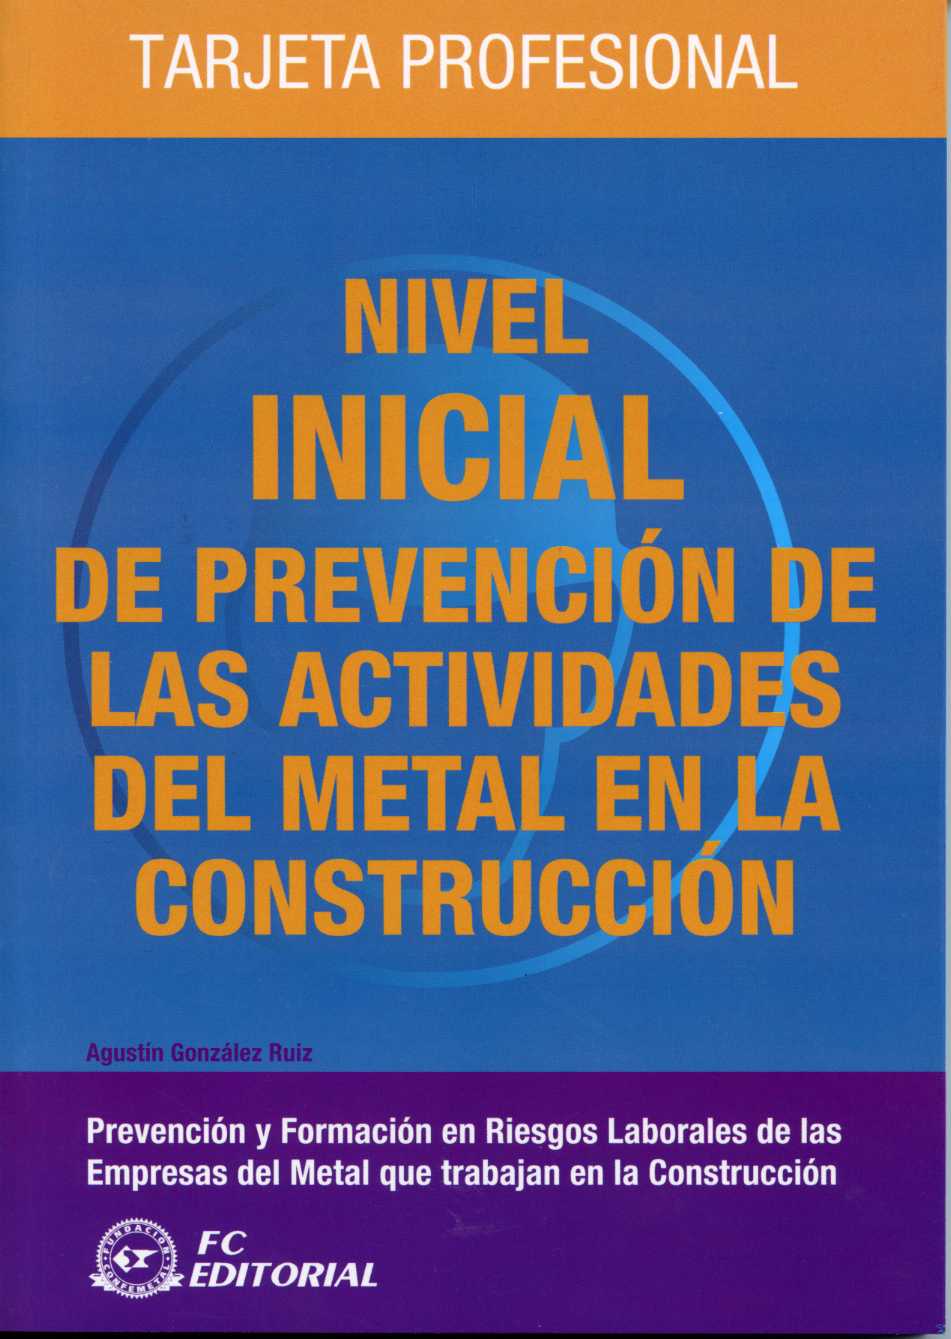 Nivel Inicial de Prevención de las Actividades del Metal en la Construcción. Tarjeta Profesional-0